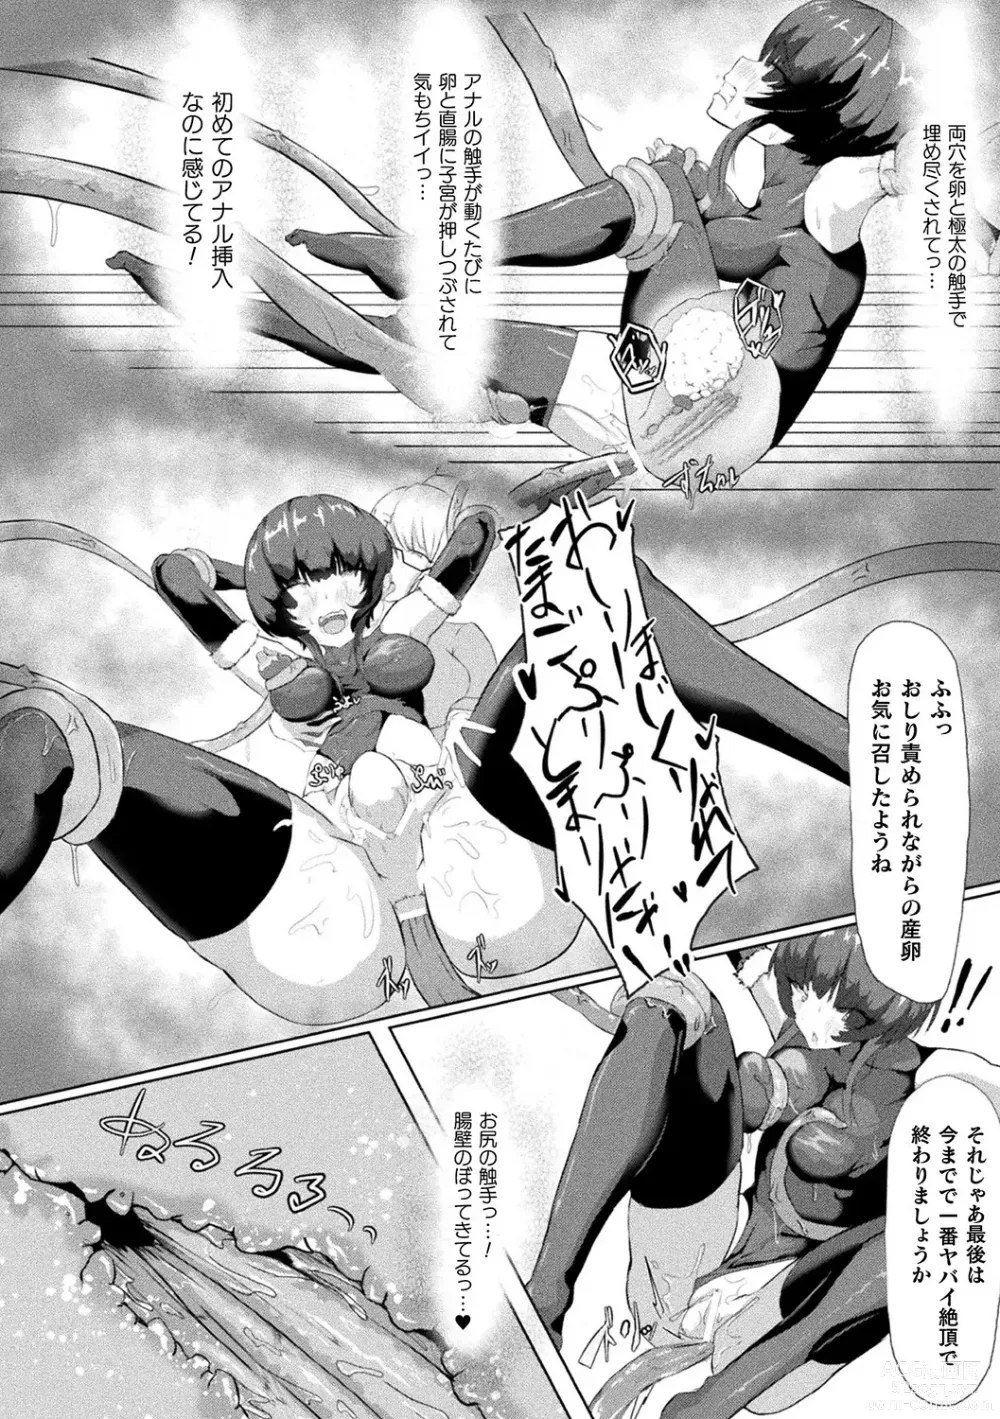 Page 98 of manga Bessatsu Comic Unreal AI ni Wakaraserareru Jinrui Hen Vol. 2